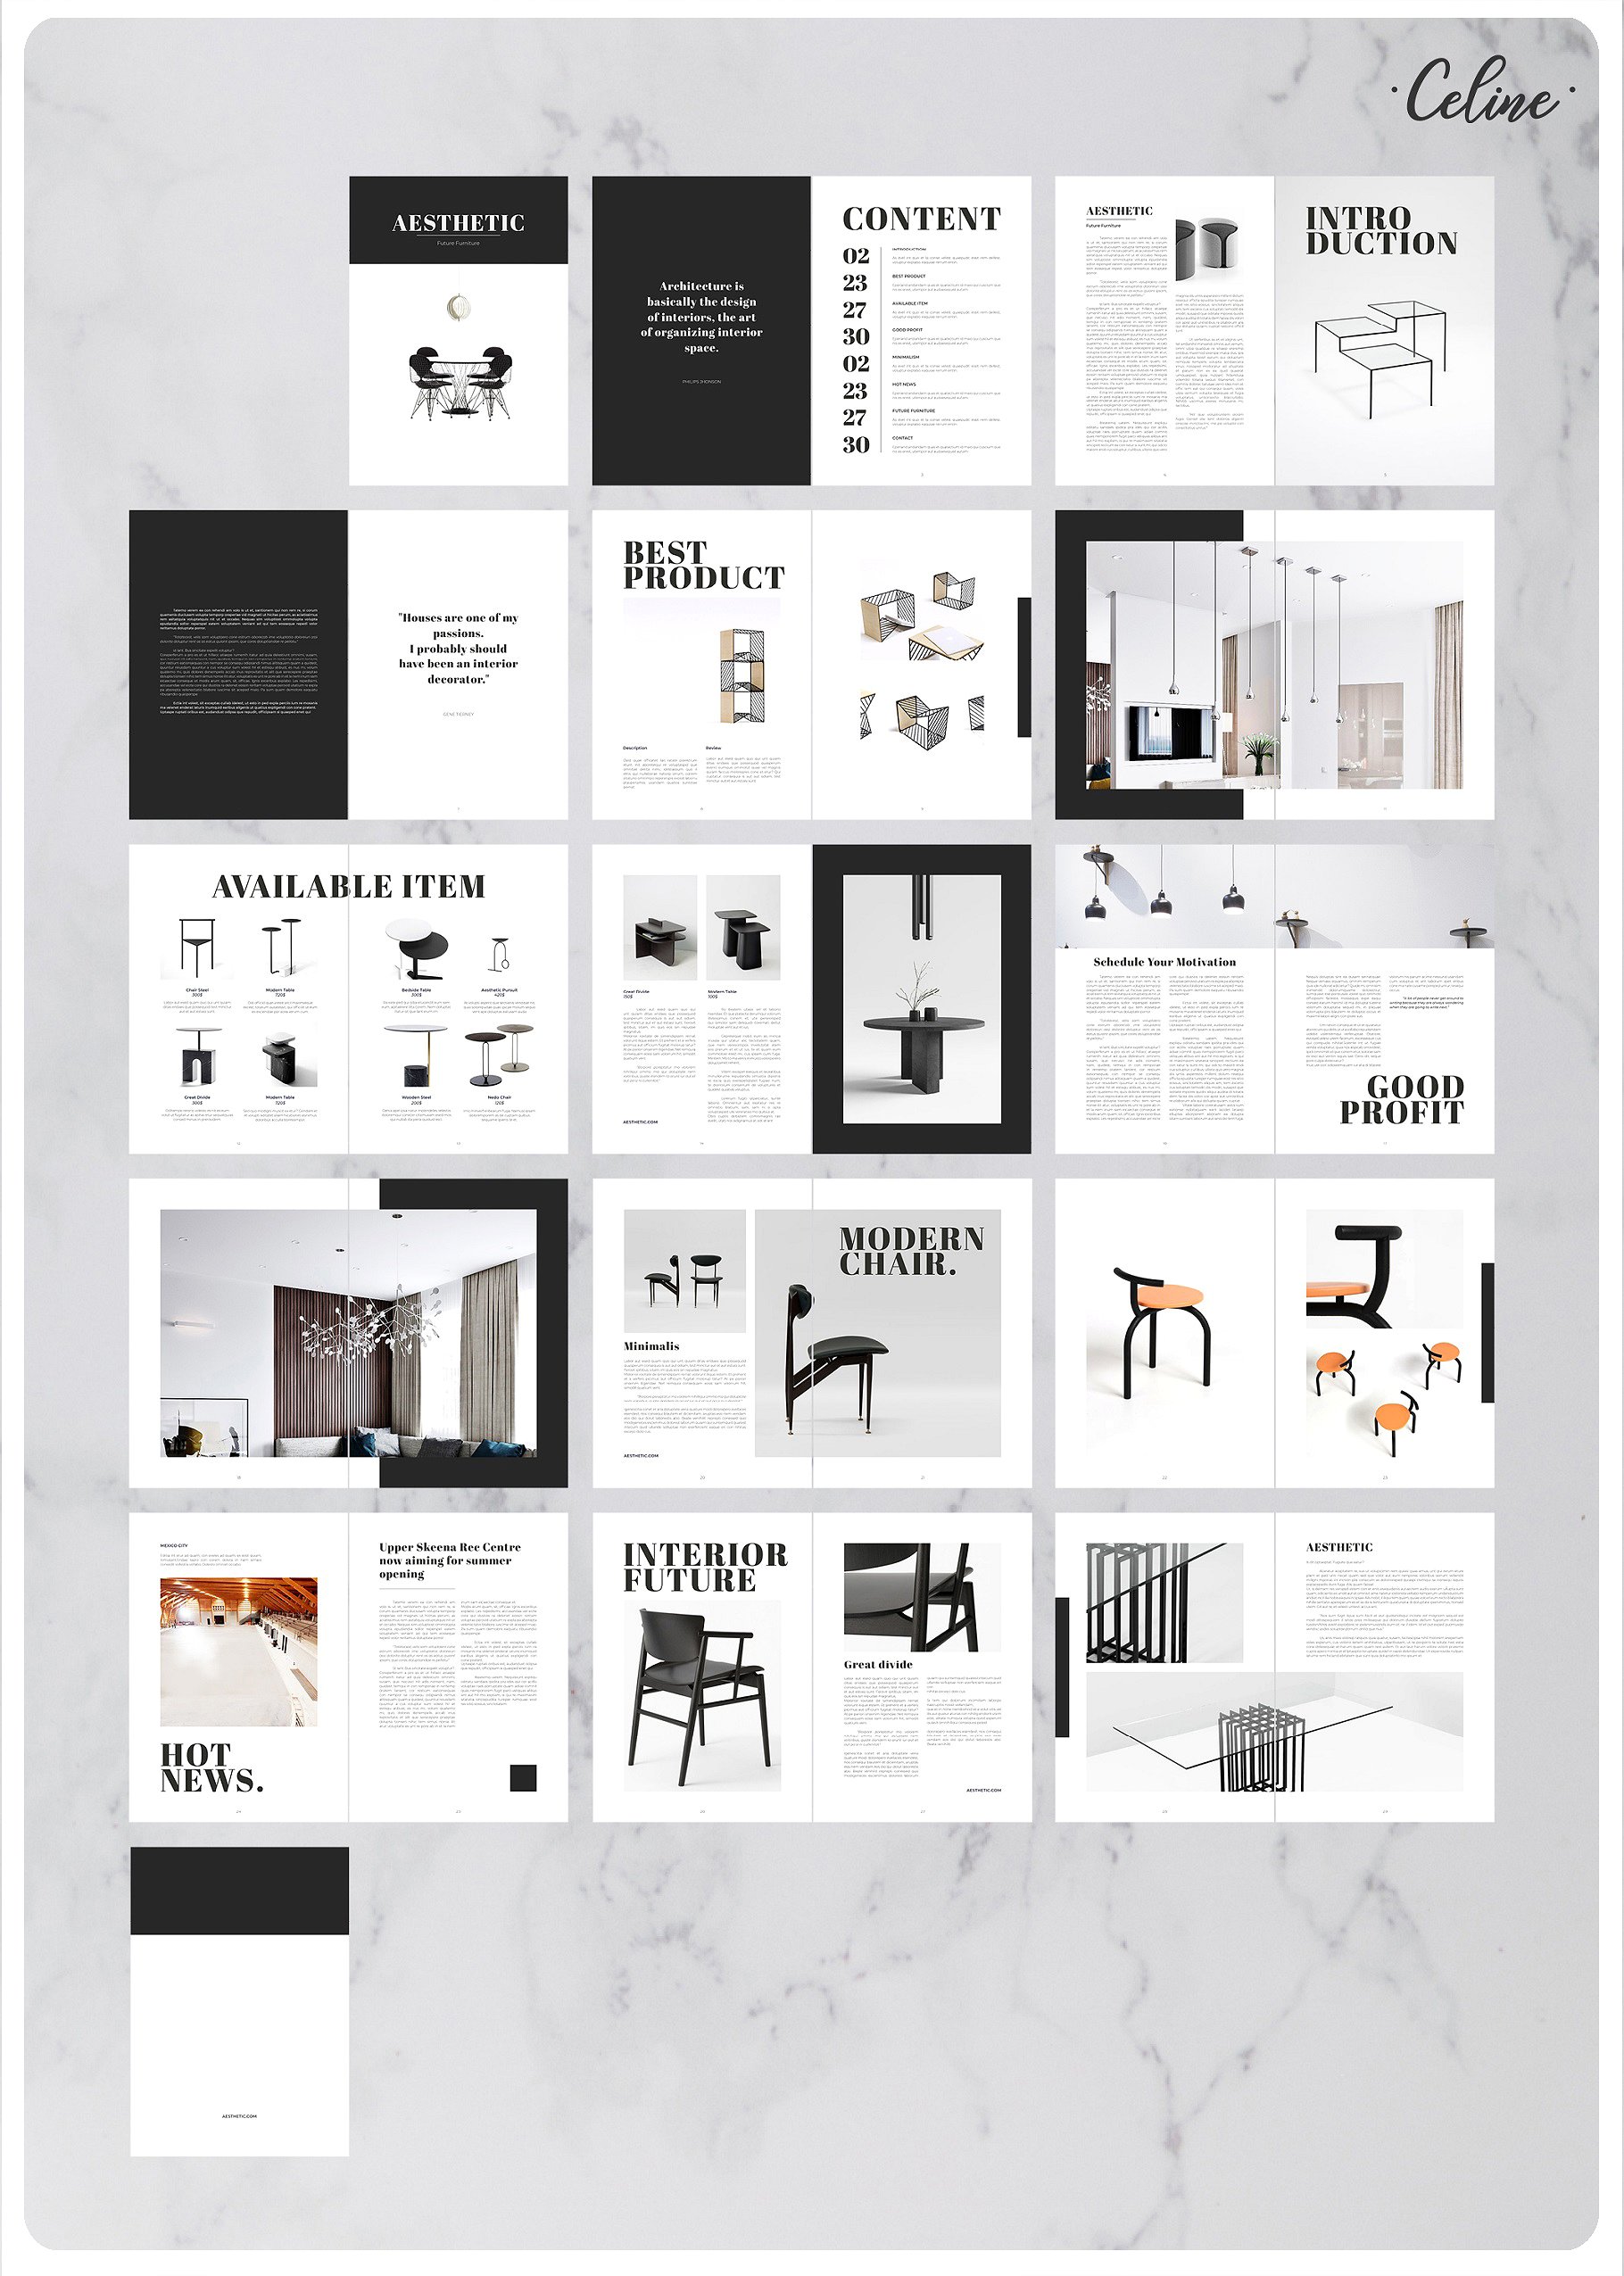 时尚家具设计产品促销A4画册杂志Indesign模板 Fashion Furniture Design Product Promotion A4 Album Magazine Indesign Template插图8